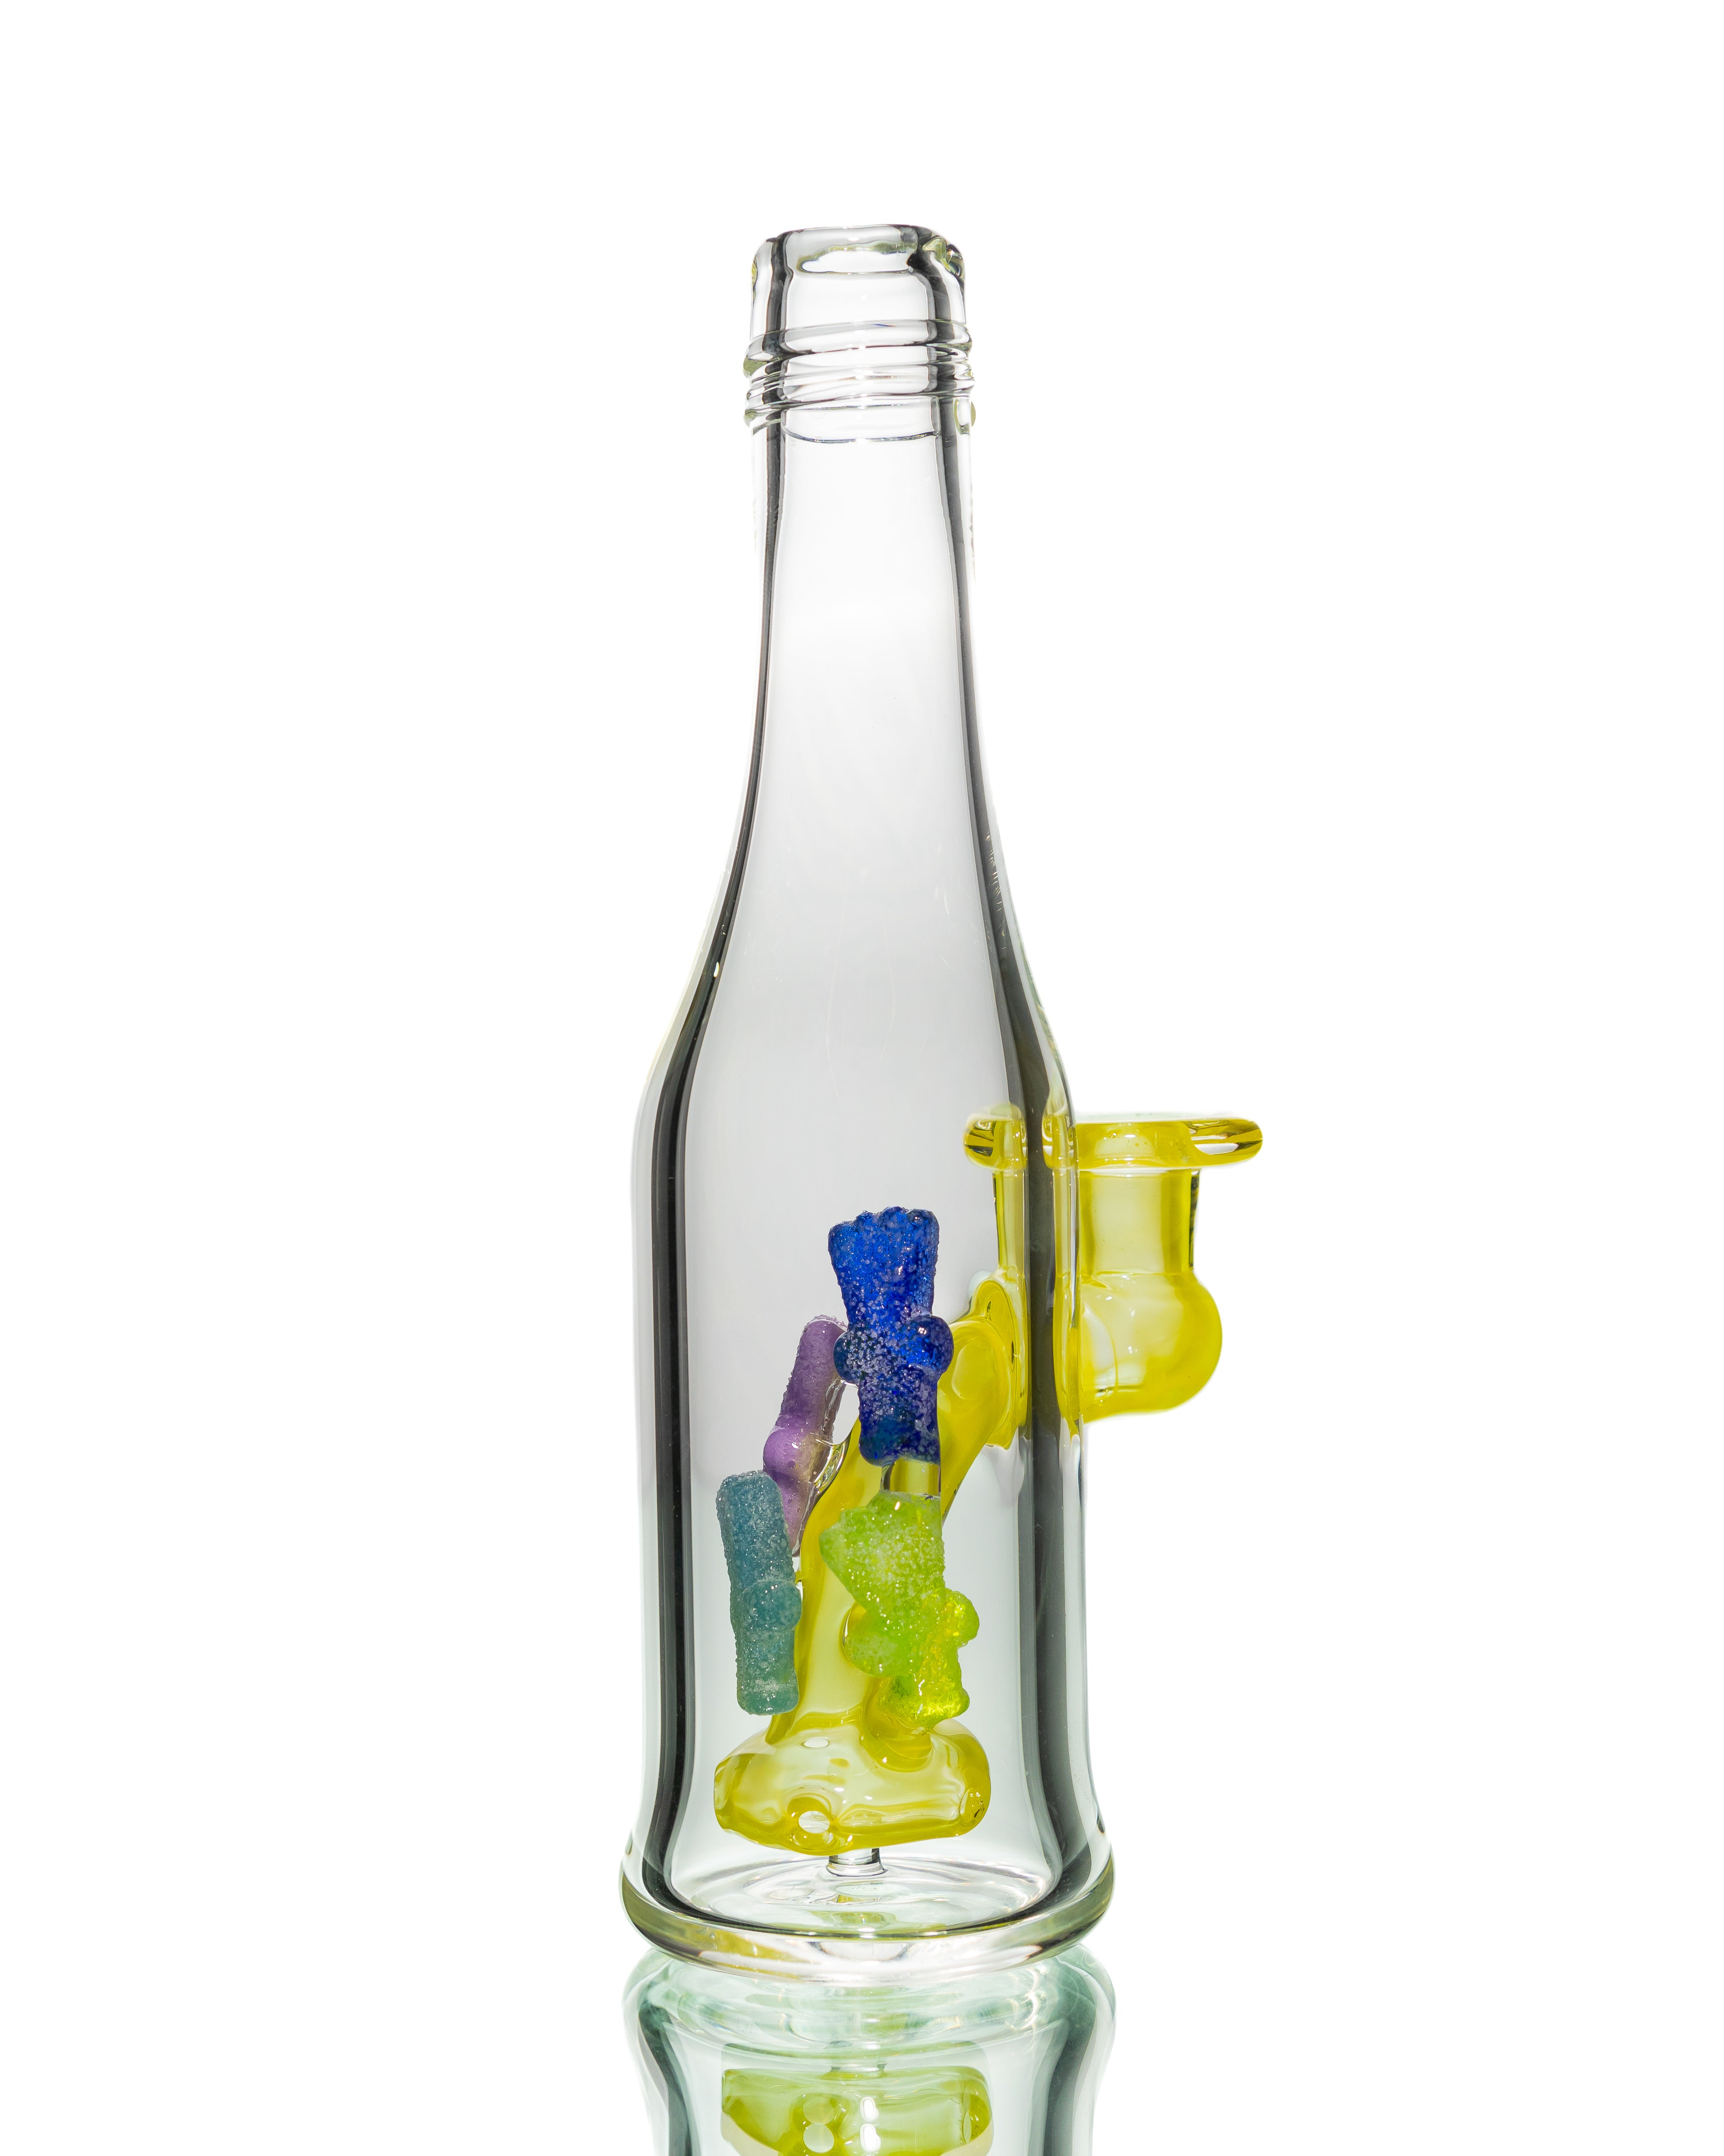 Emperial Glass - Lemon Drop Sour Patch Kids Bottle Rig